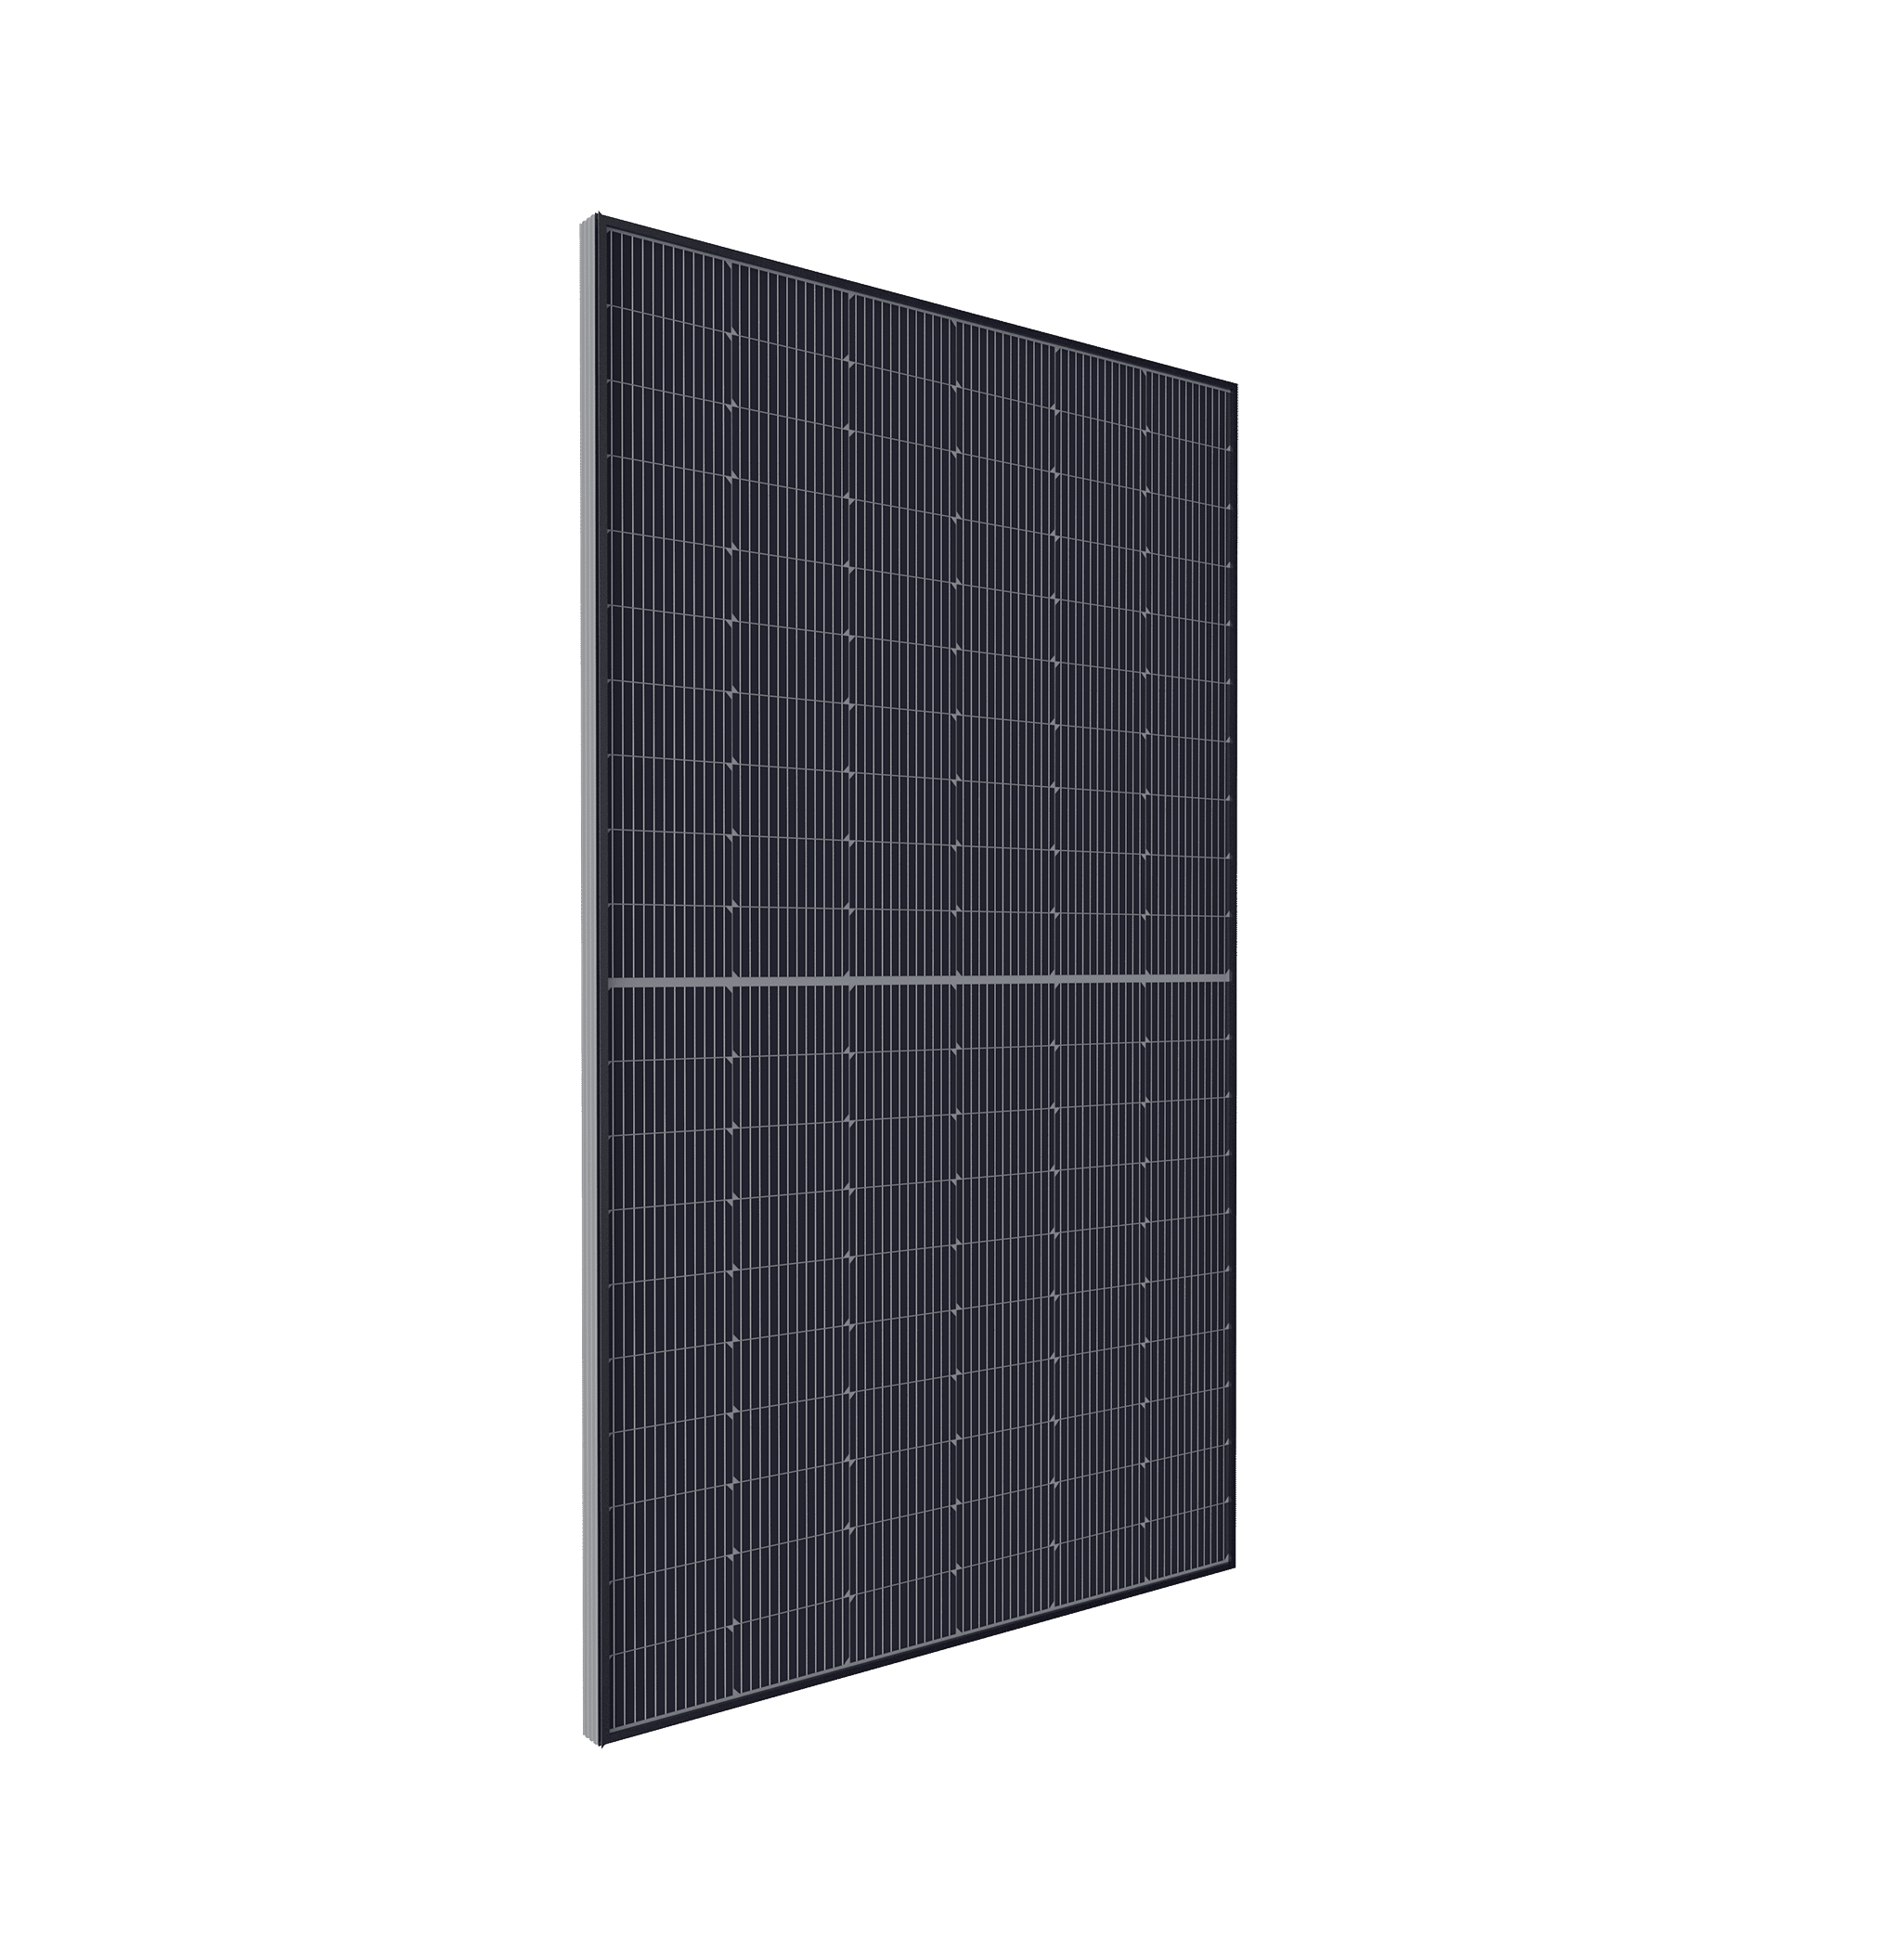 Panneau solaire Duonergy HJT 375 AC vue de profil